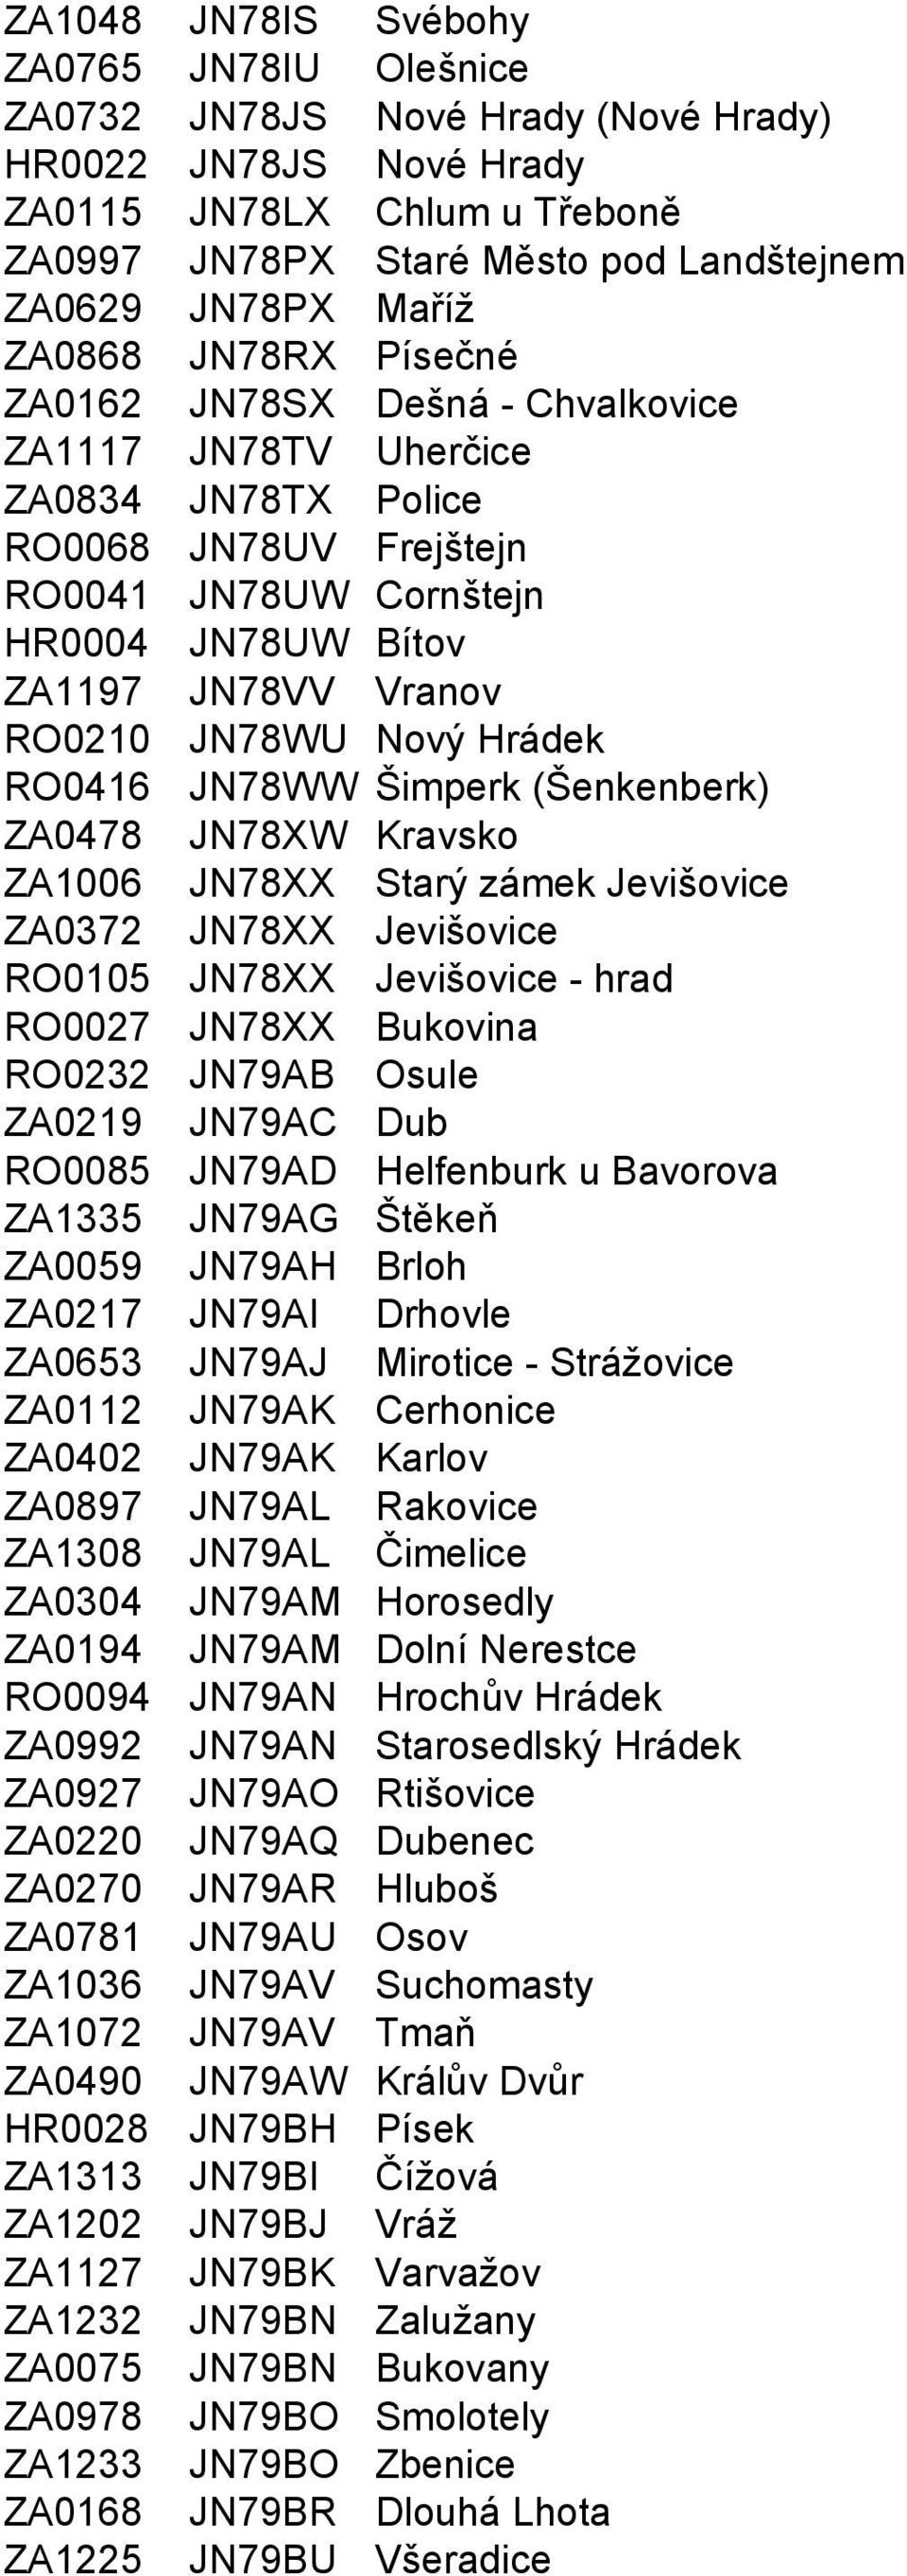 JN78WU Nový Hrádek RO0416 JN78WW Šimperk (Šenkenberk) ZA0478 JN78XW Kravsko ZA1006 JN78XX Starý zámek Jevišovice ZA0372 JN78XX Jevišovice RO0105 JN78XX Jevišovice - hrad RO0027 JN78XX Bukovina RO0232